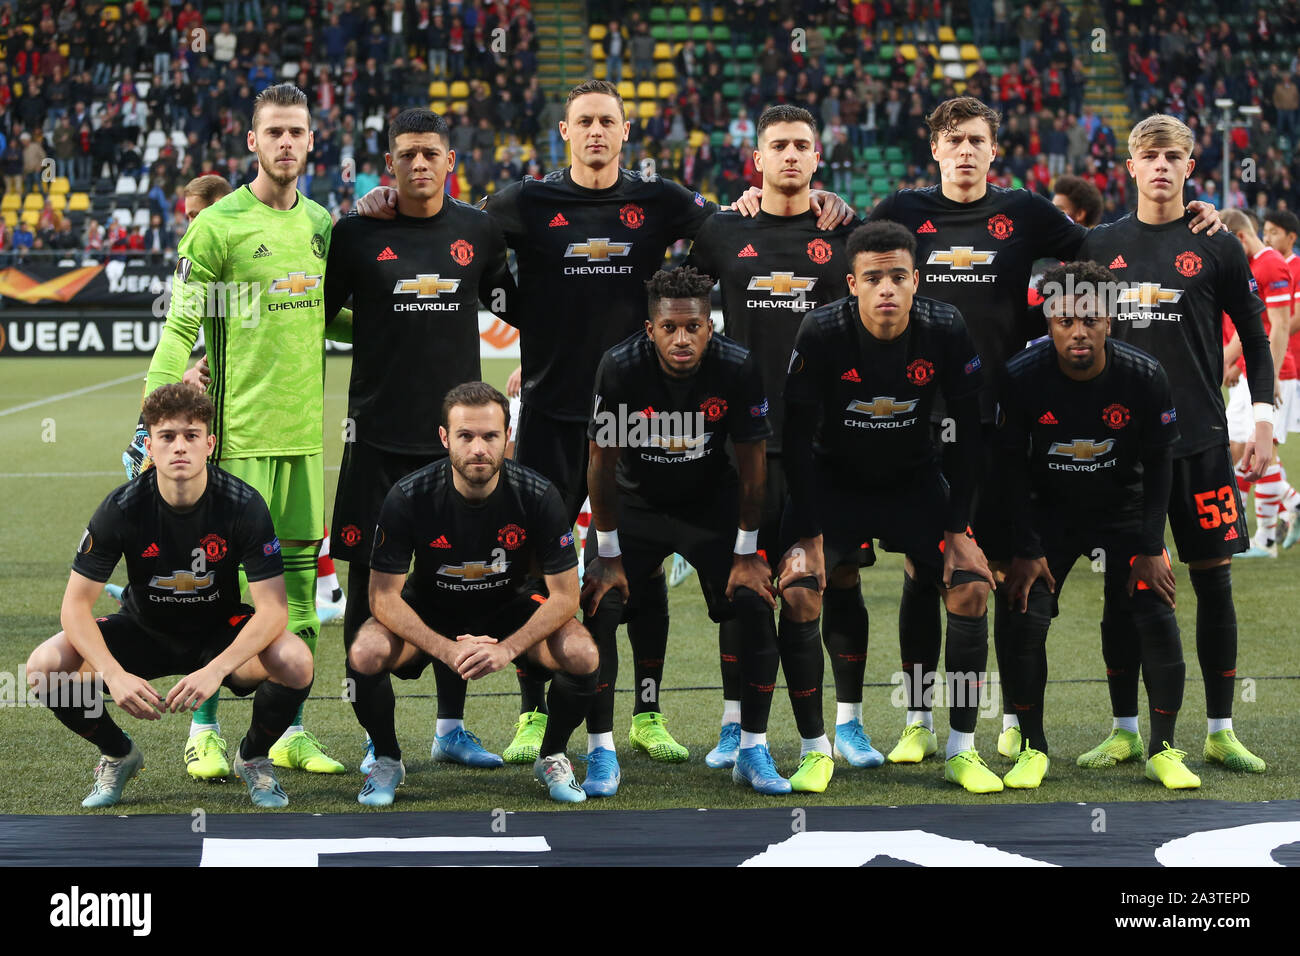 La Haye, Pays-Bas - 3 octobre 2019 : Manchester United squad photographié au cours de la 2019-2020 UEFA Europa League Group L match. Banque D'Images